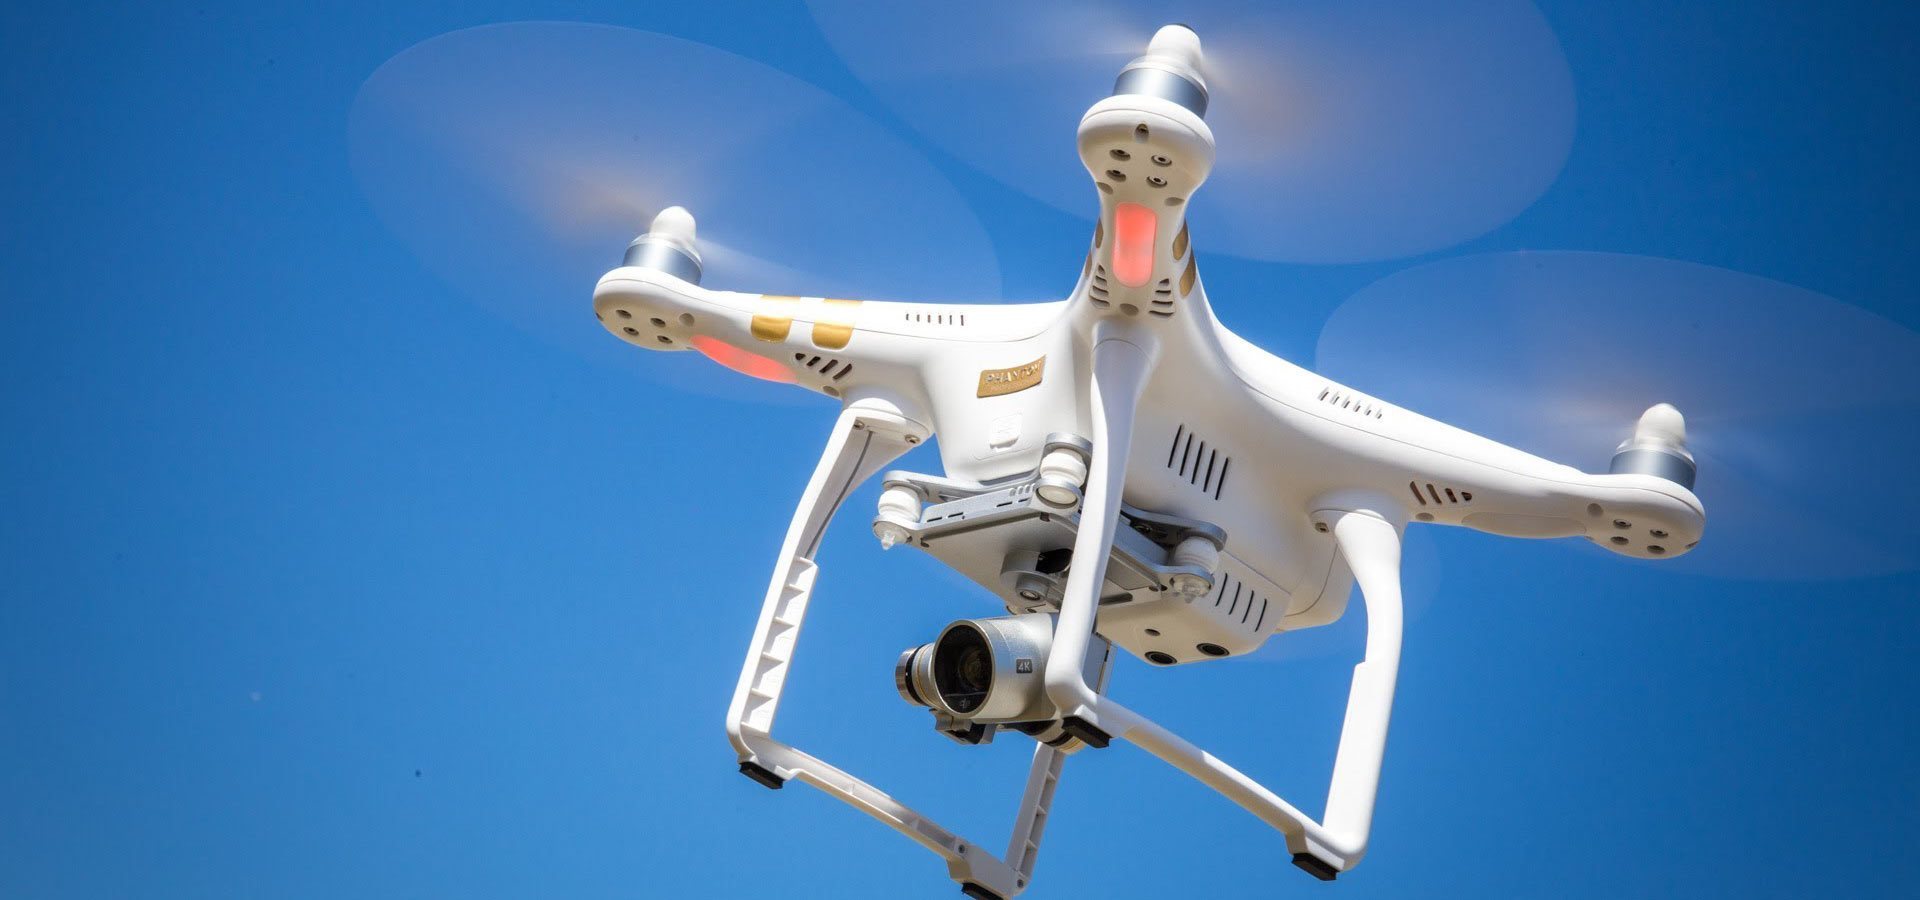 O uso de drones pode transformar o setor de logística?